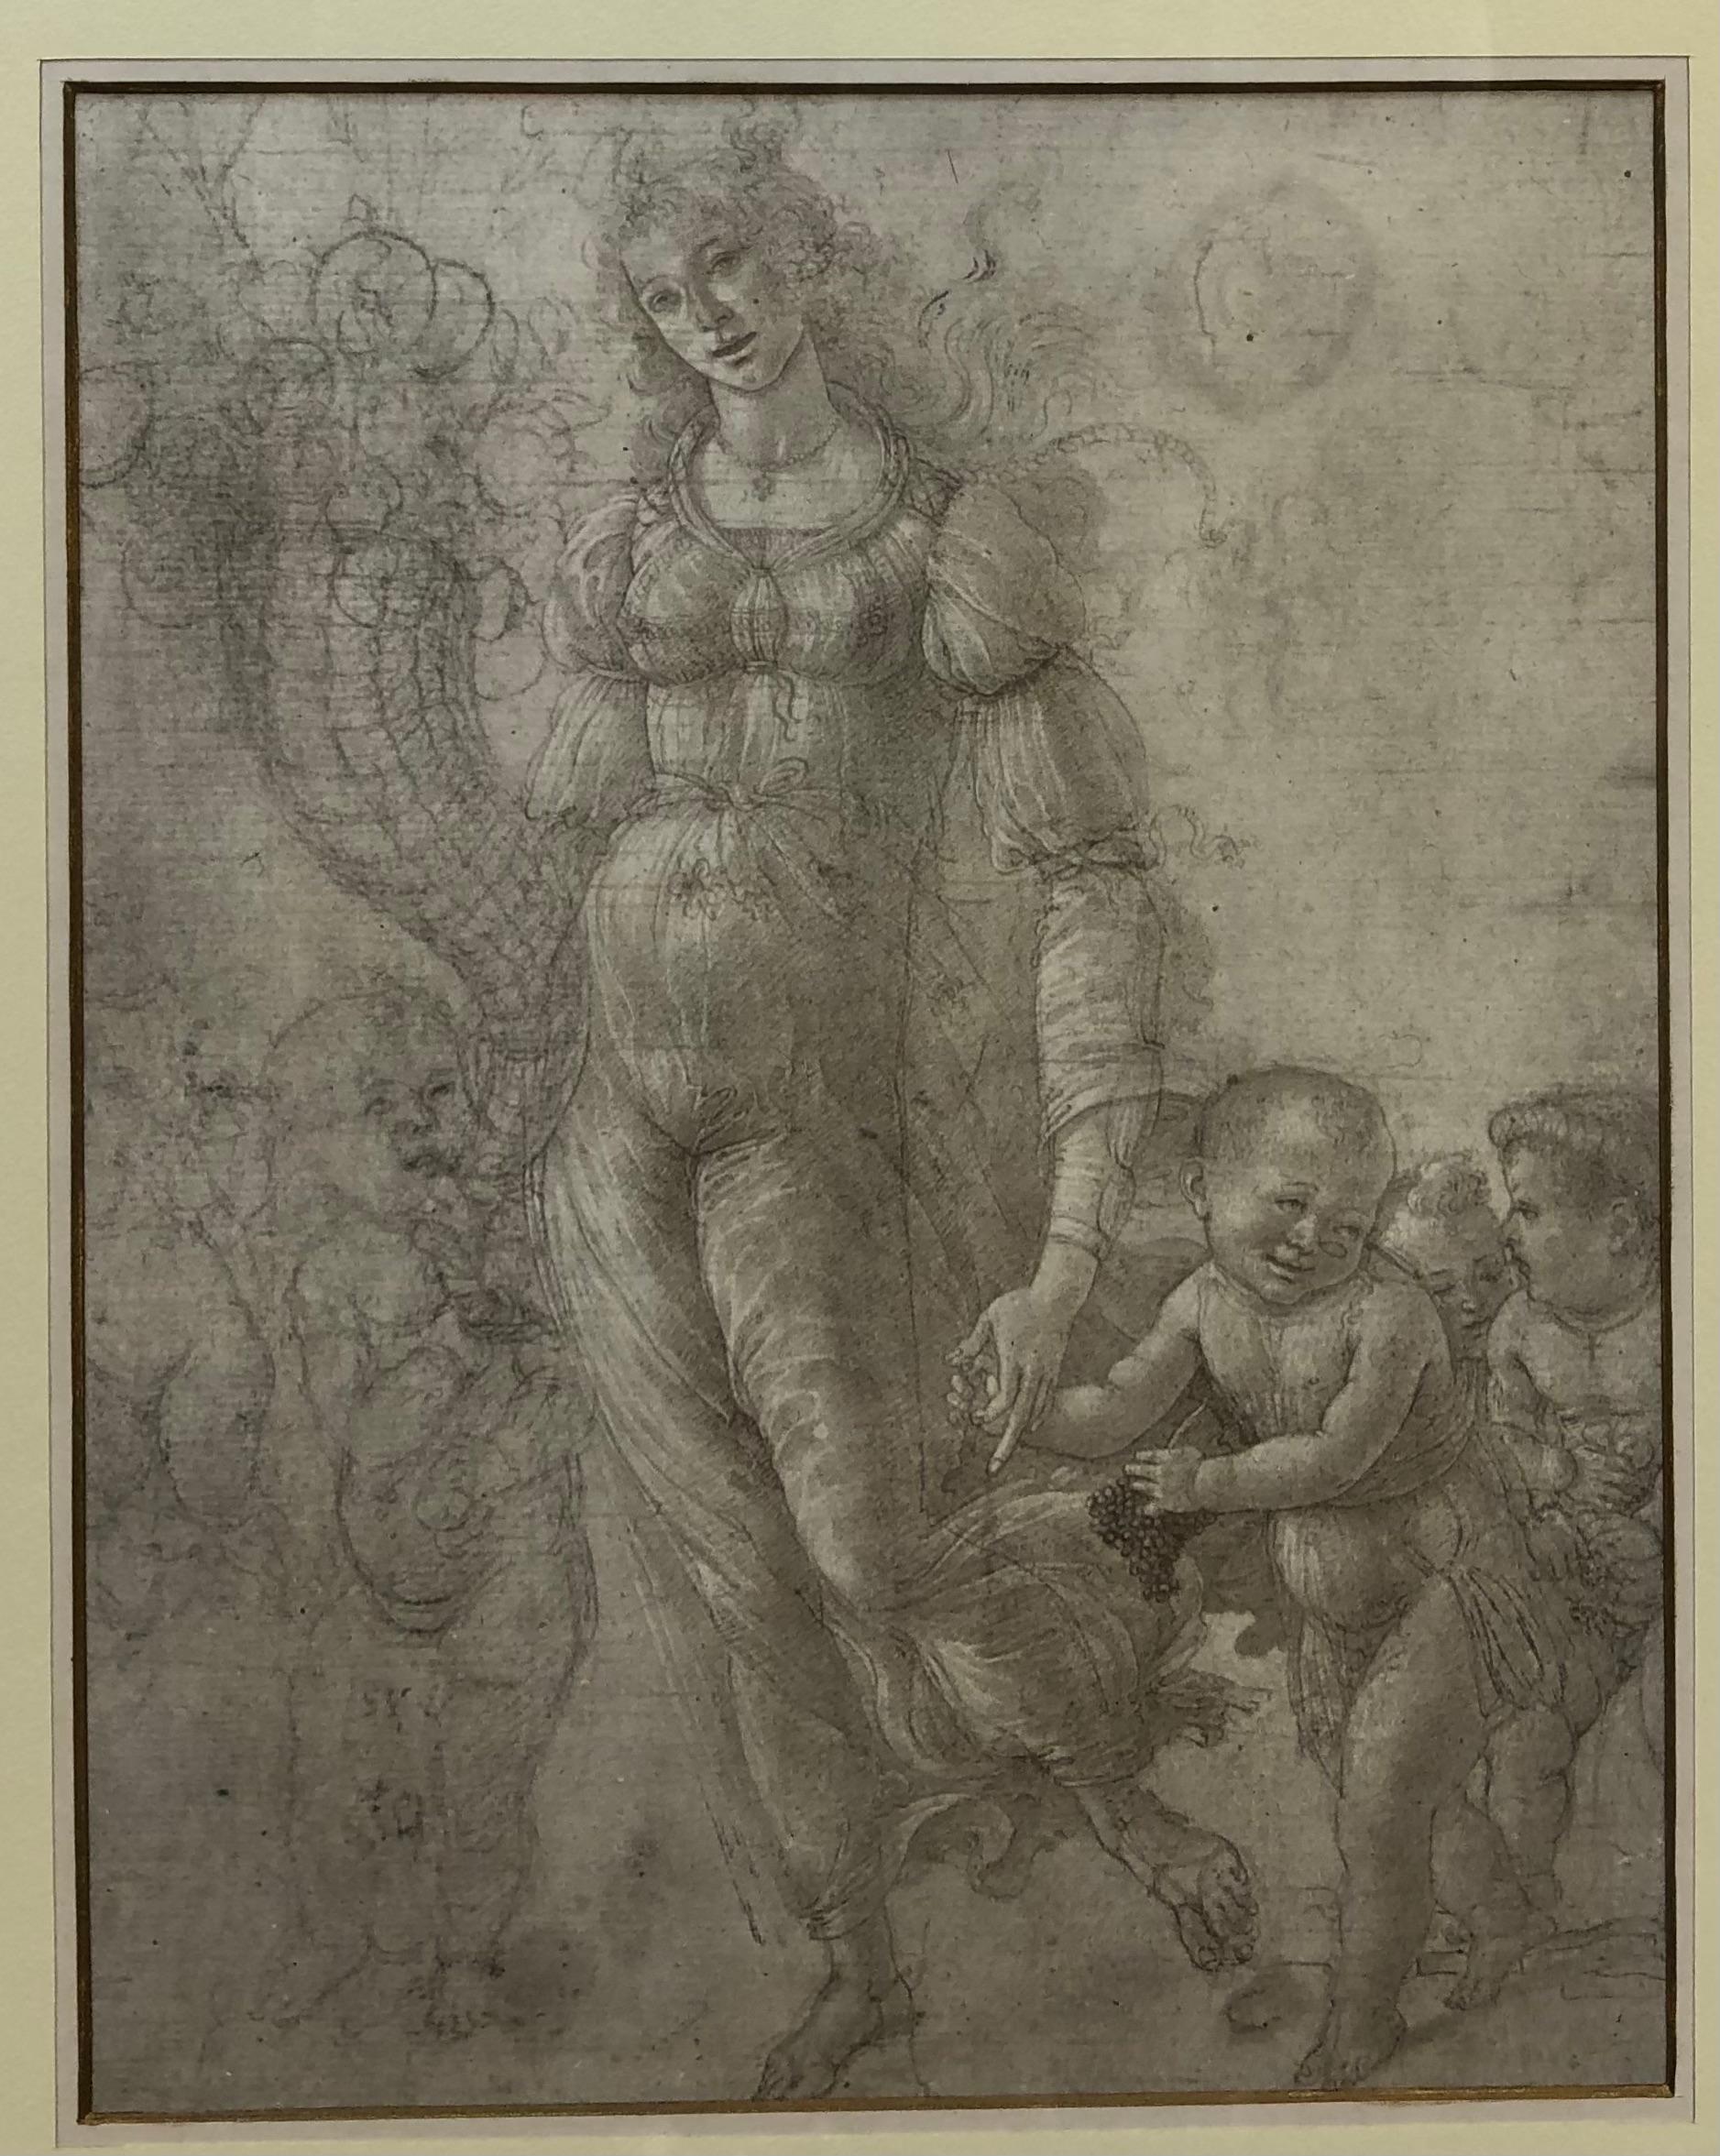 Eine verspielte neoklassizistische Zeichnung einer Frau mit Kindern, gerahmt von der Medici-Gesellschaft in London.
Präsentiert in einem professionellen vergoldeten Holzrahmen. 

Maße: 15 7/8